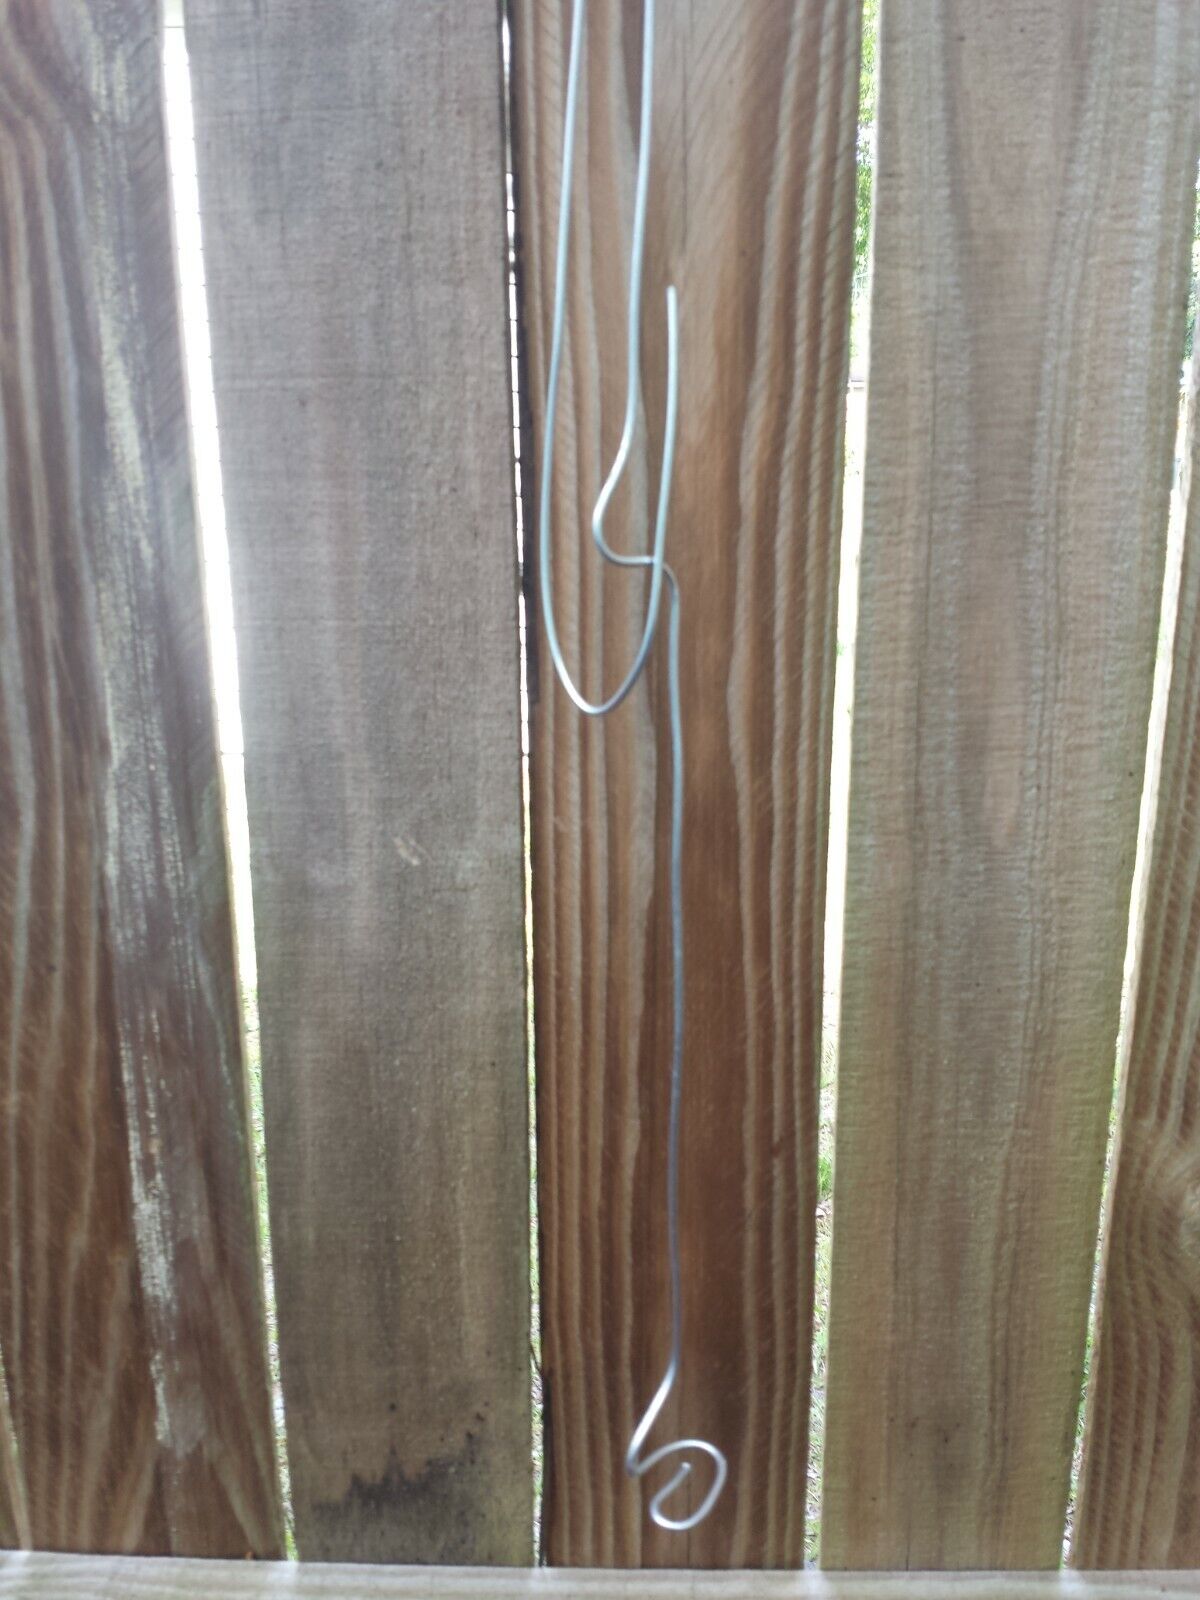 Orchid Vanda wire hanger adjustable length 22 - 36 no basket needed